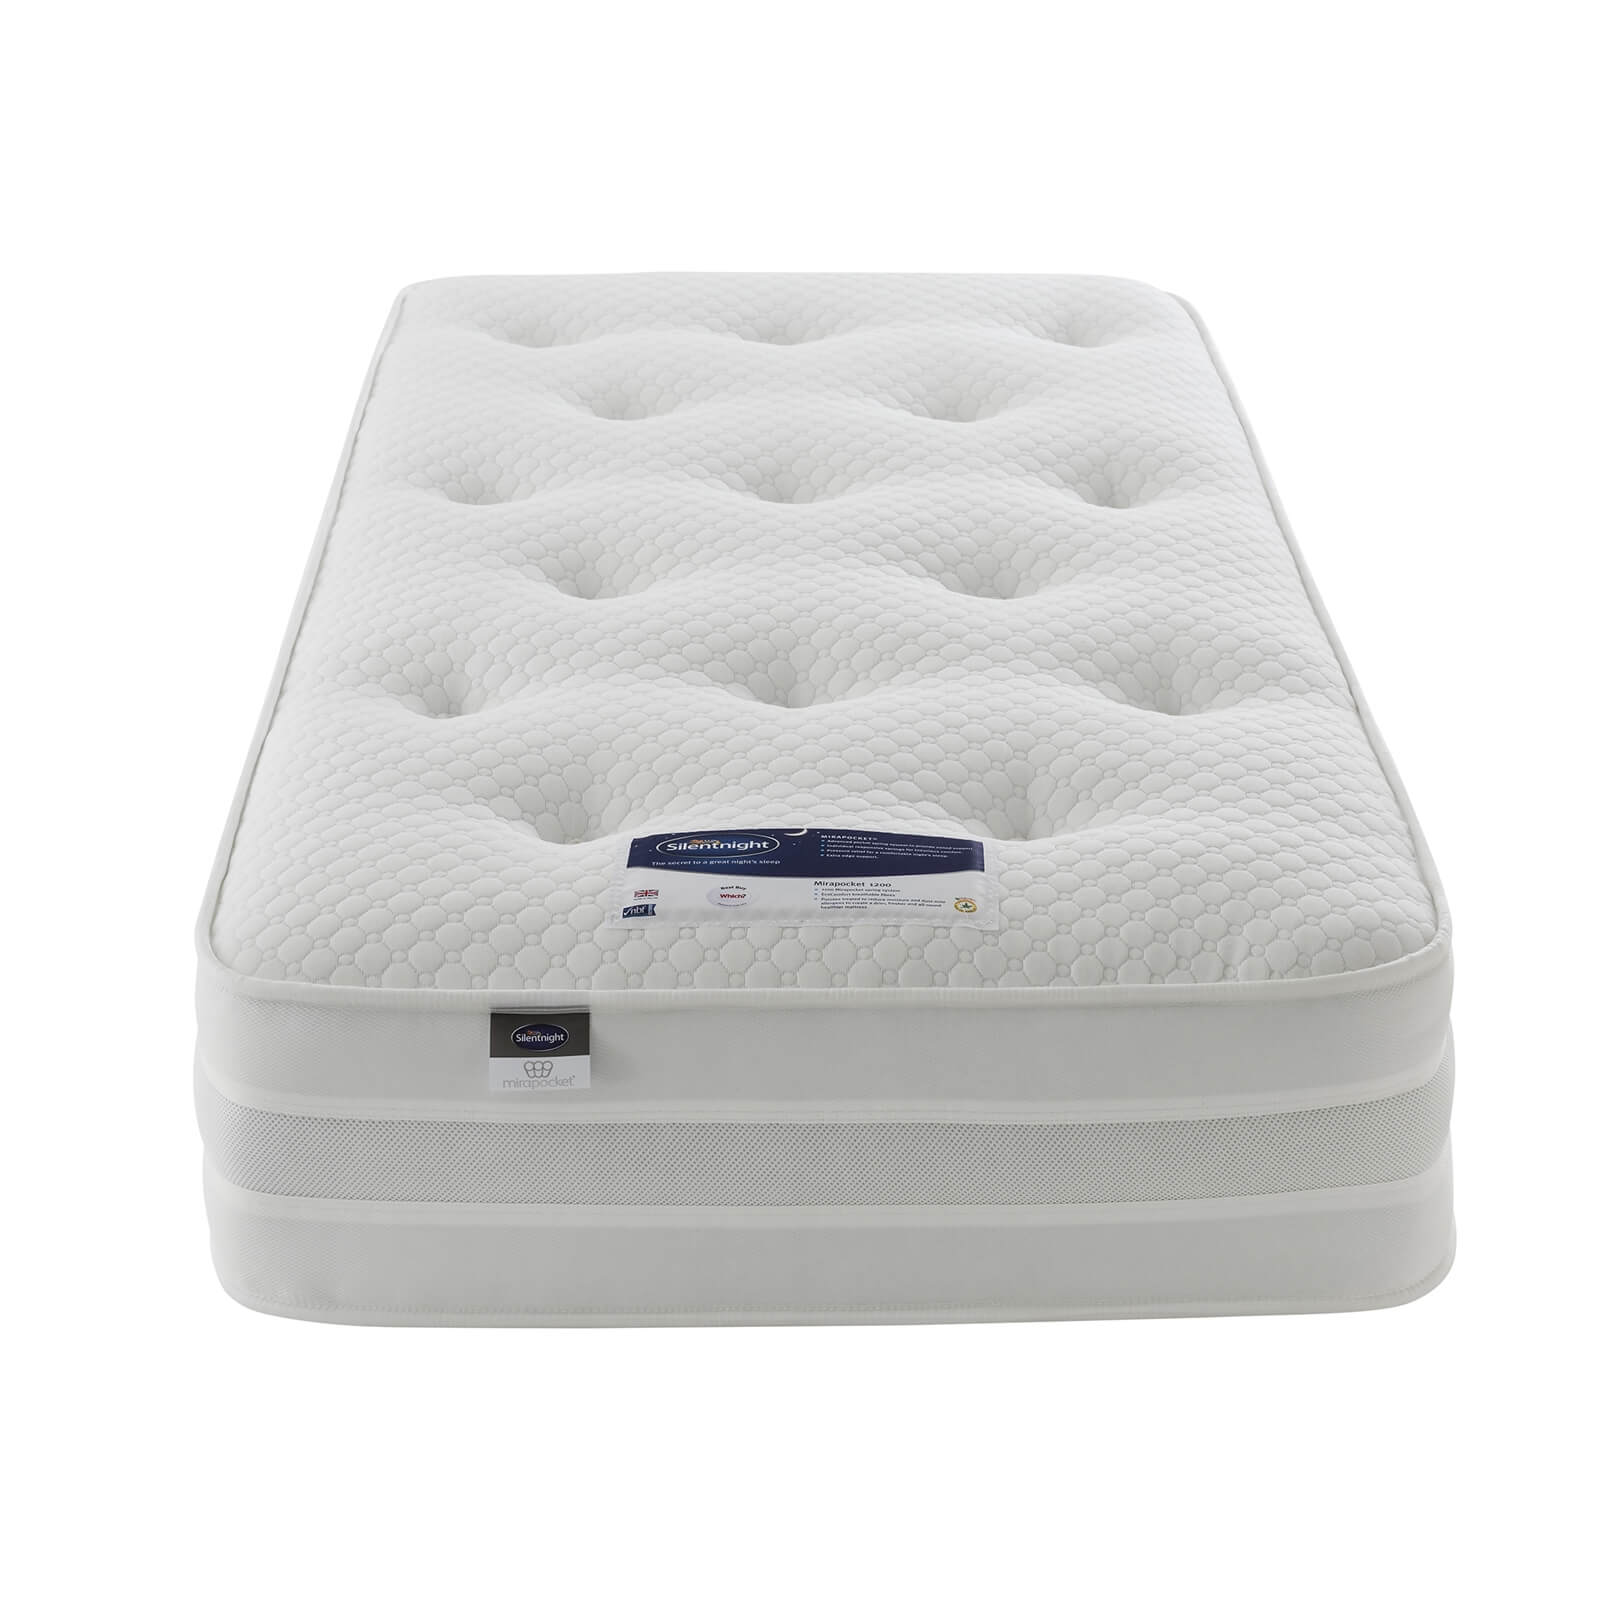 Silentnight Eco Comfort 1200 Pocket Divan Bed 2 Drawer - Slate Grey - Single